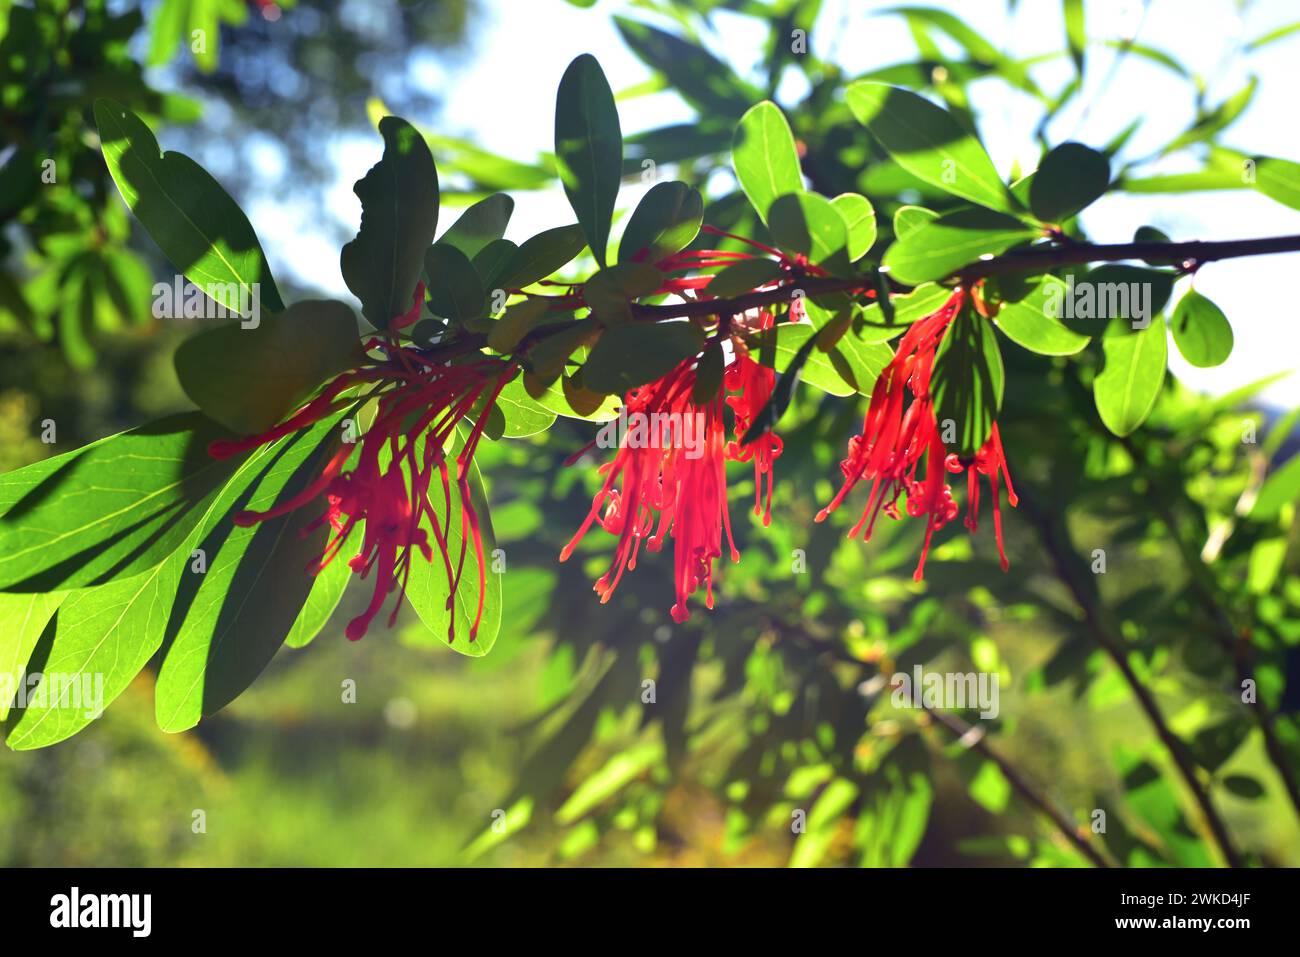 Notro oder chilenischer Feuerbaum (Embothrium coccineum) ist ein kleiner immergrüner Baum, der in den gemäßigten Regionen Chiles und Argentiniens beheimatet ist. Blumen und Blätter Deta Stockfoto